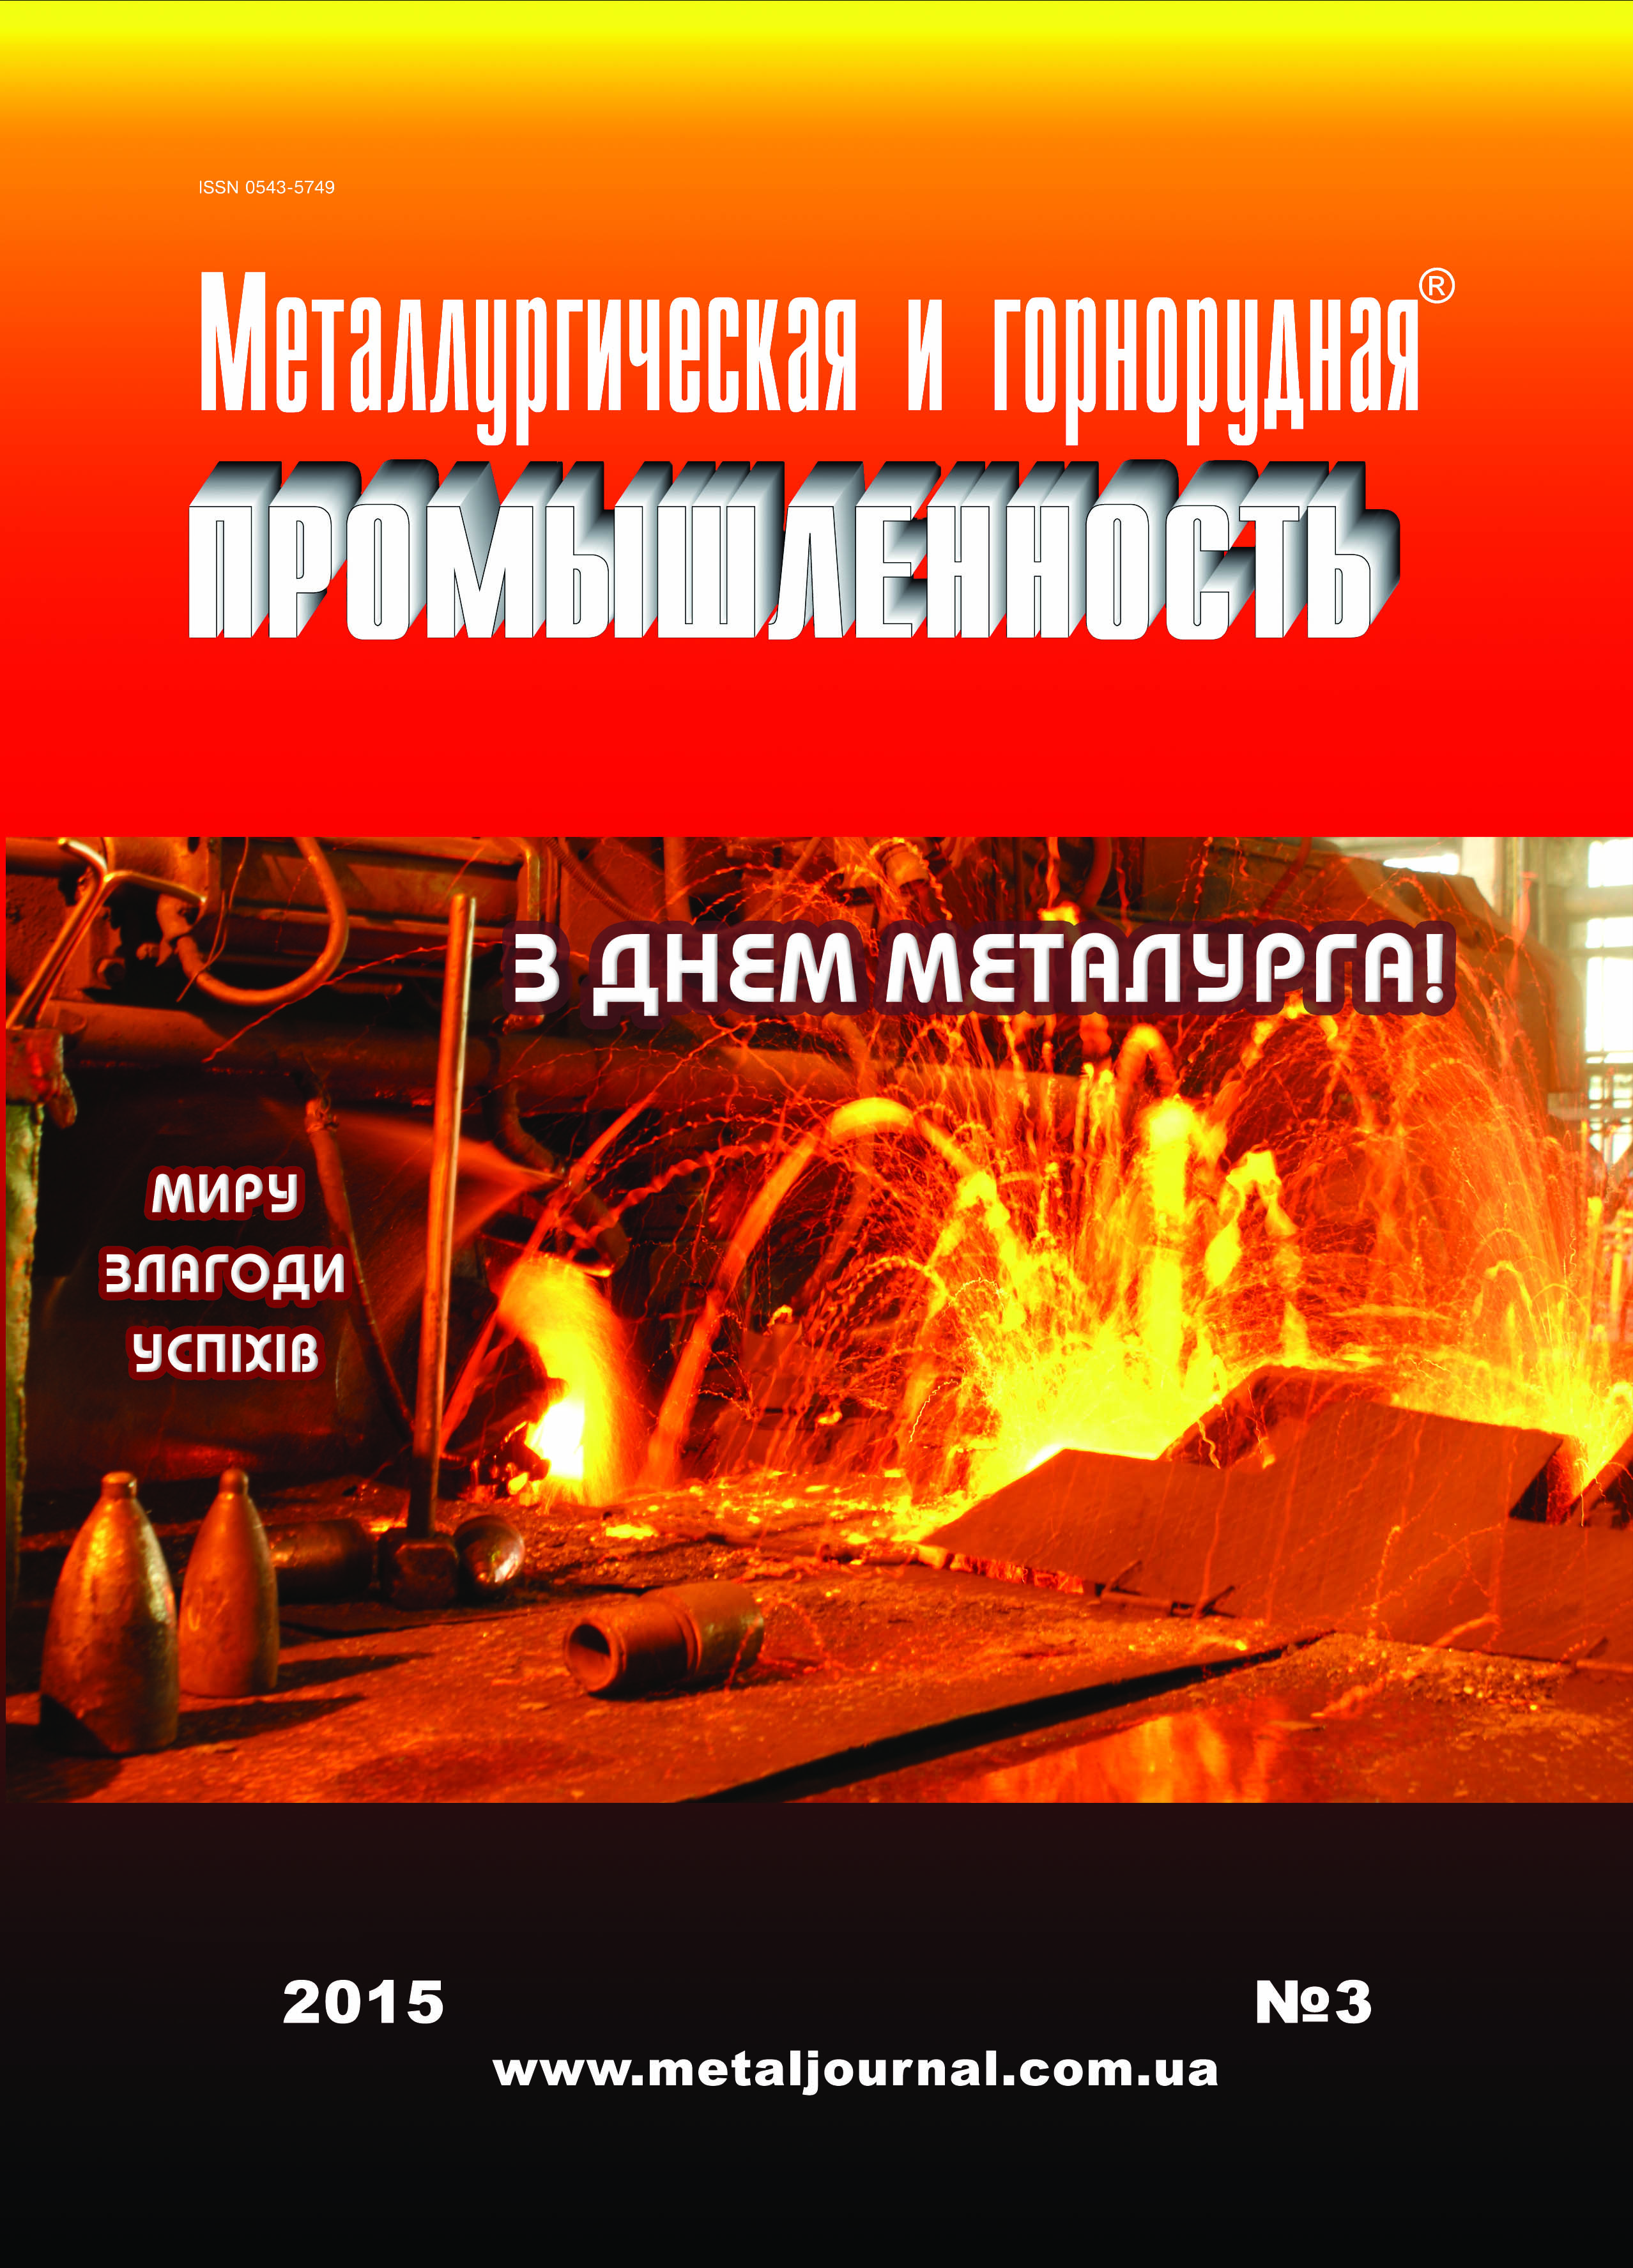 Металлургическая и горнорудная промышленность №3 (294) 2015 г. изображение